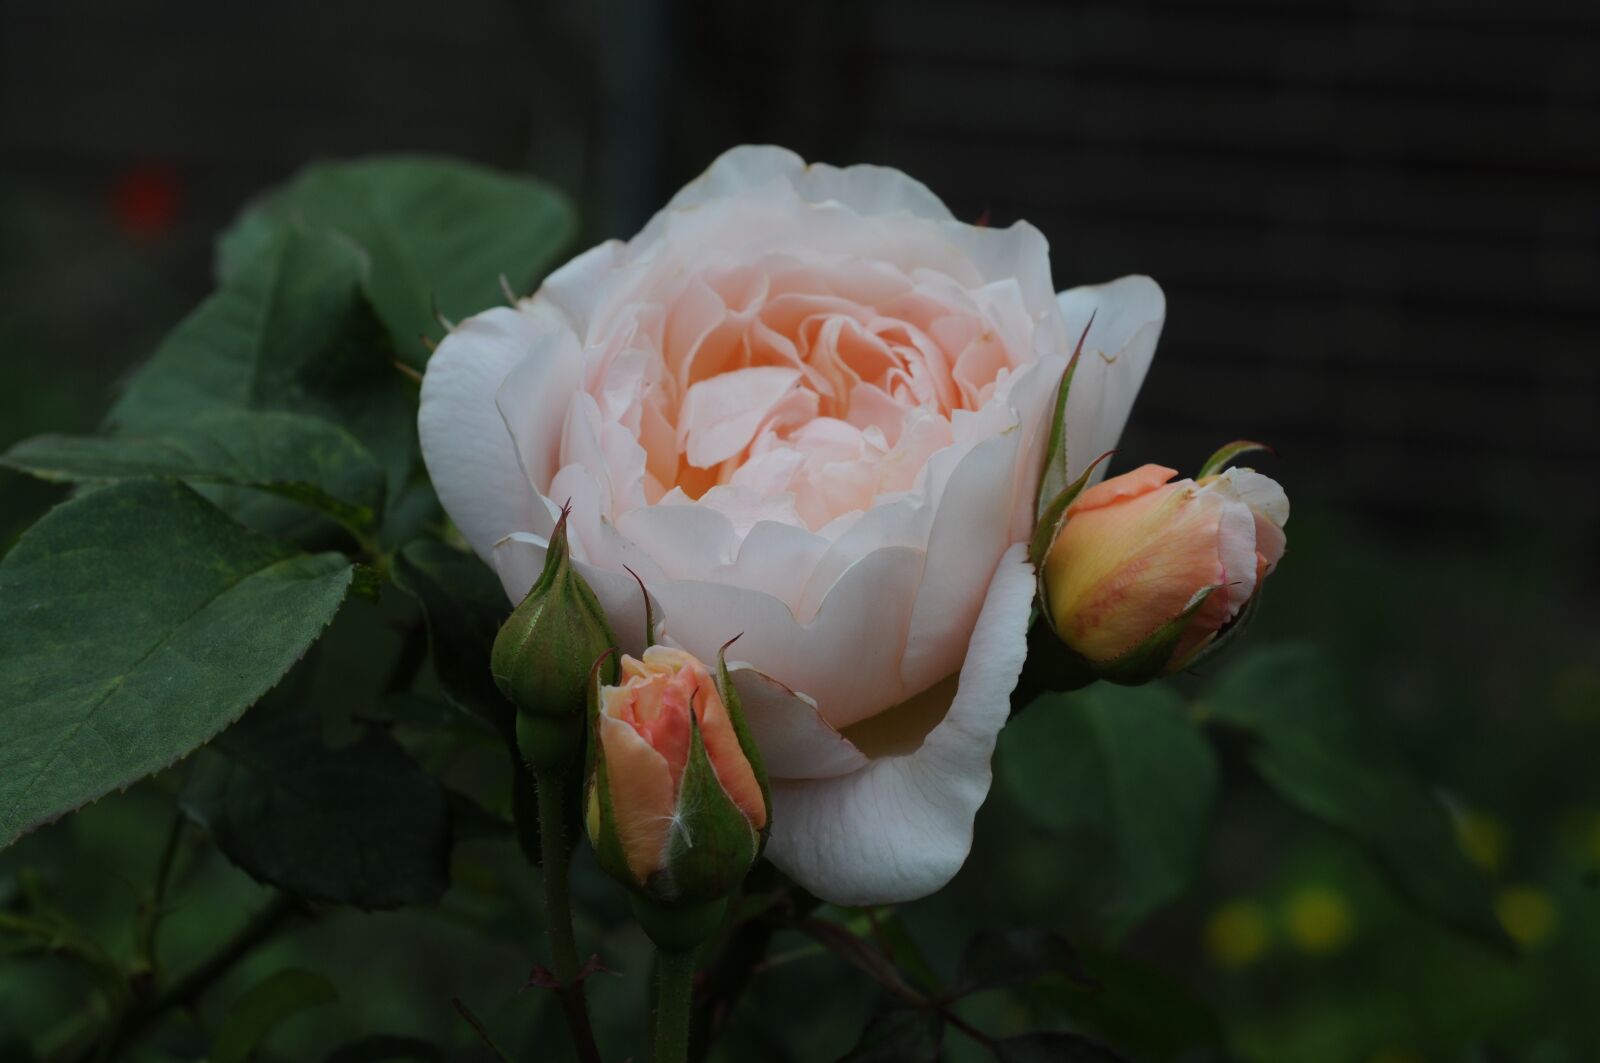 Nikon AF Micro-Nikkor 60mm F2.8D sample photo. Rose, flower, blossom photography